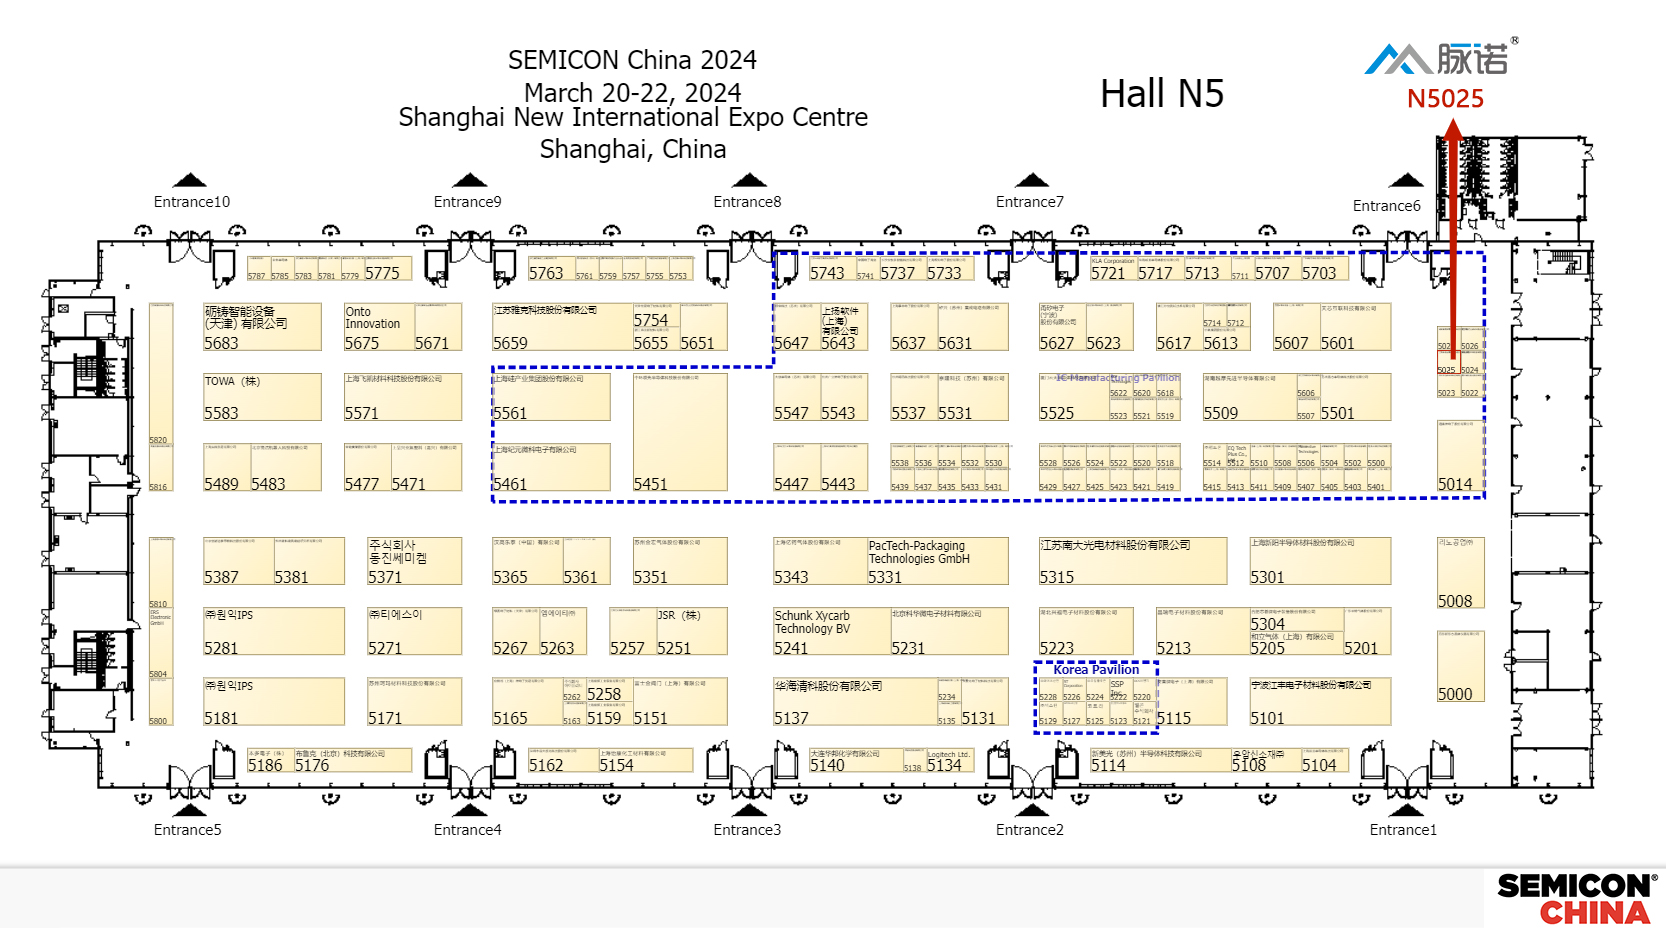 上海脉诺将参加SEMICON CHINA 2024展会（N5025）